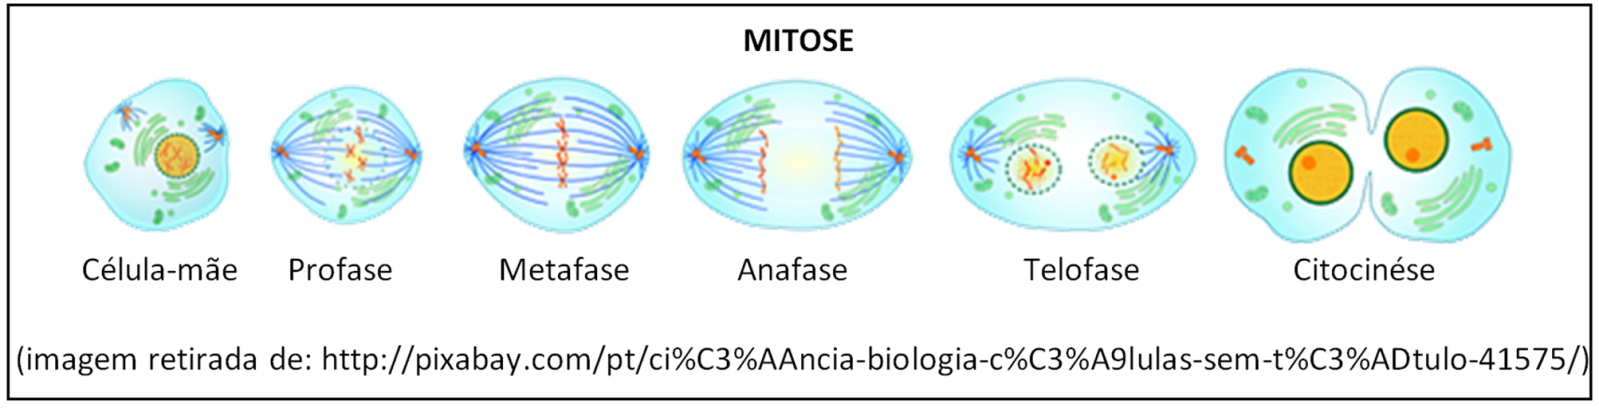 fases da mitose